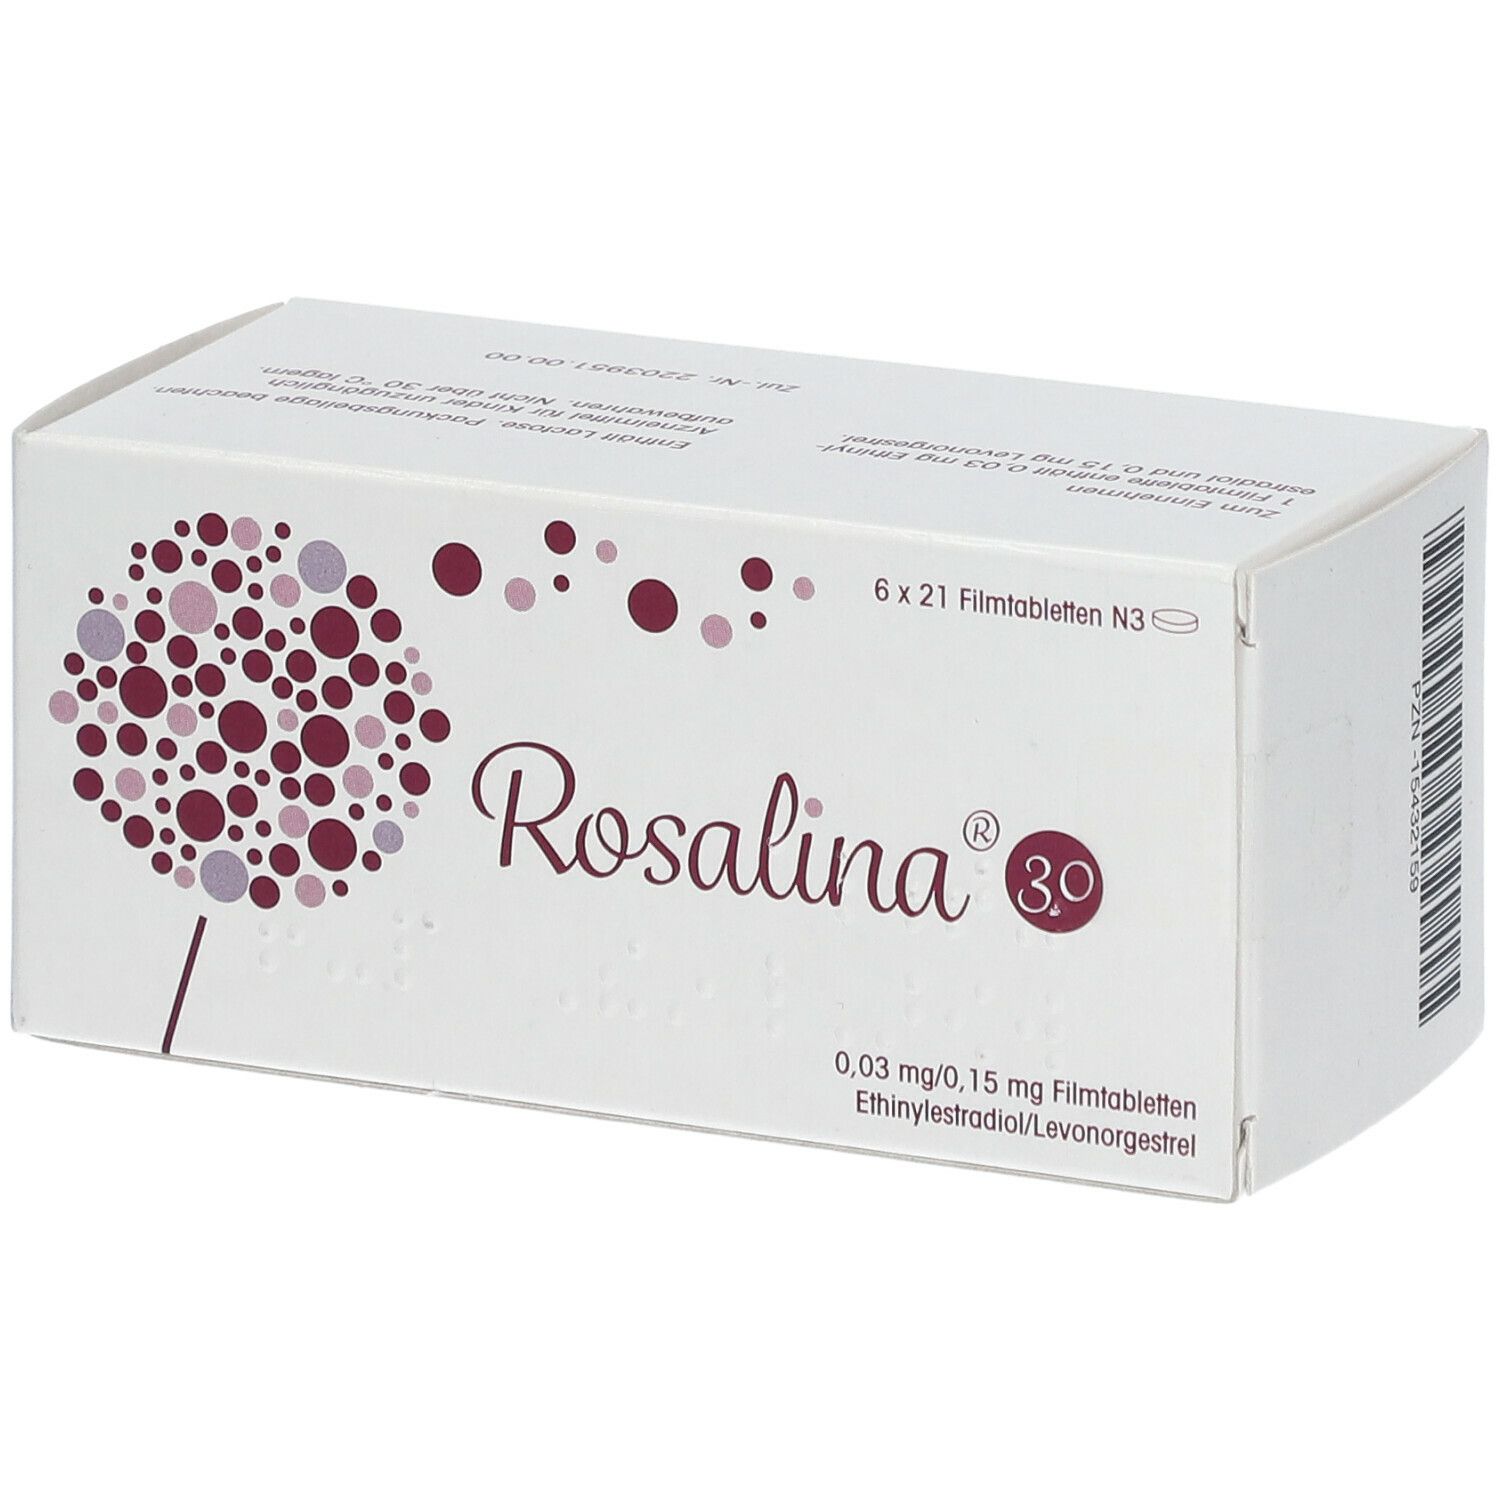 ROSALINA 30 0,03 mg/0,15 mg Filmtabletten